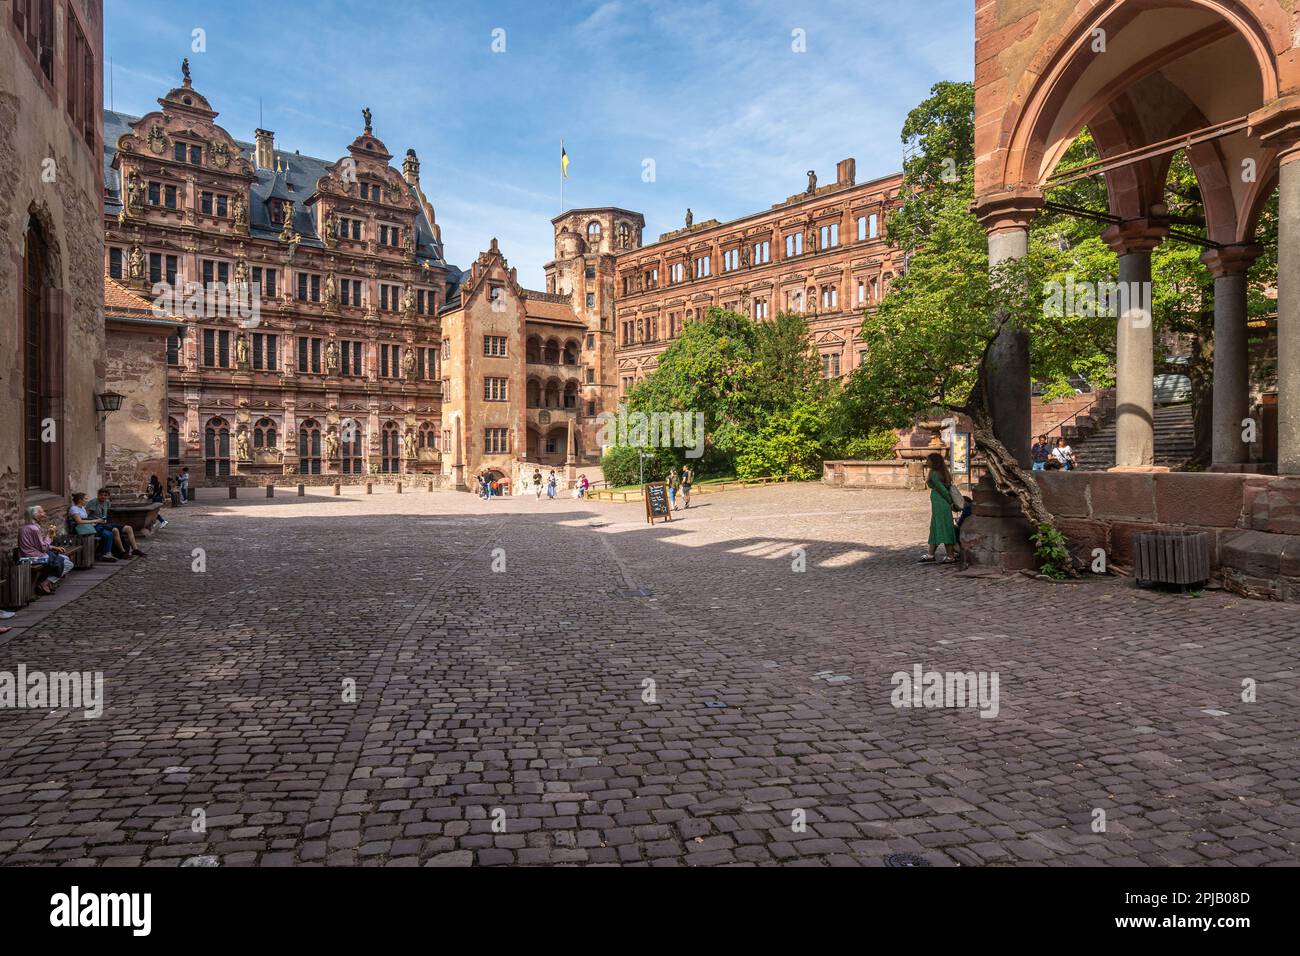 La cour intérieure du château de Heidelberg, l'un des plus fascinants châteaux allemands. Heidelberg, Bade-Wurtemberg, Allemagne Banque D'Images